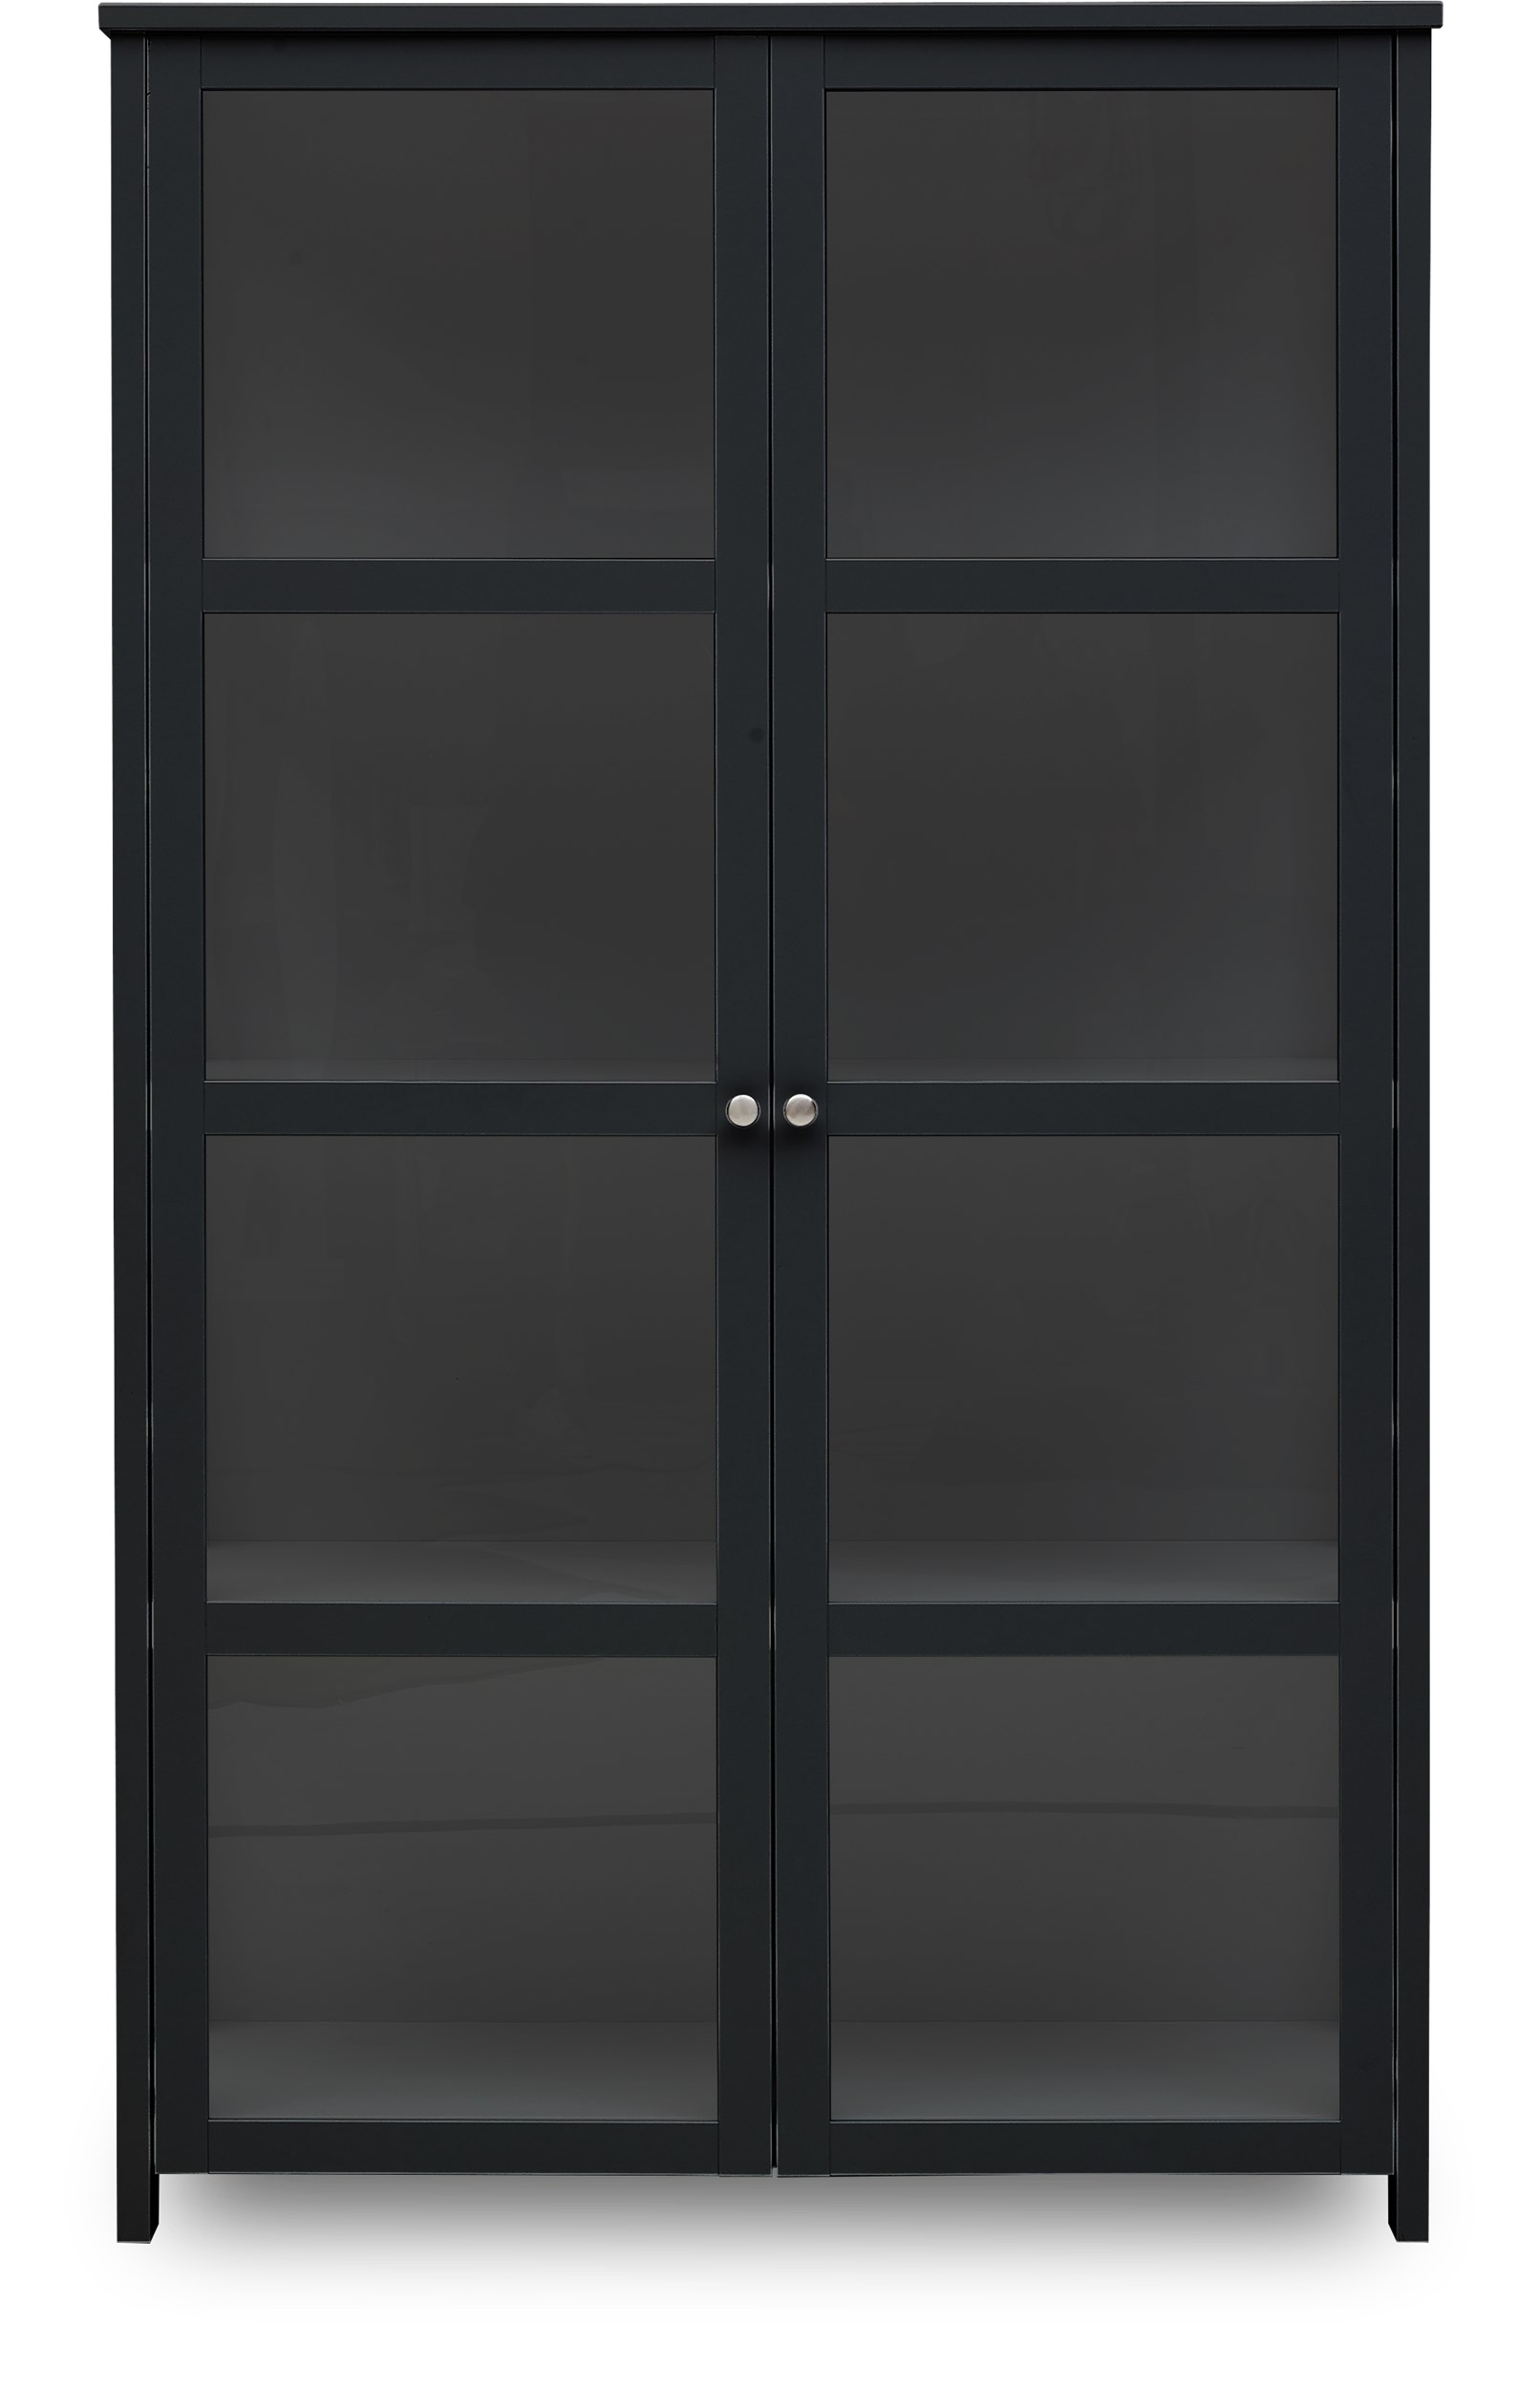 Display Vitrinskåp - Svartlackerad MDF och doors/sides with glass